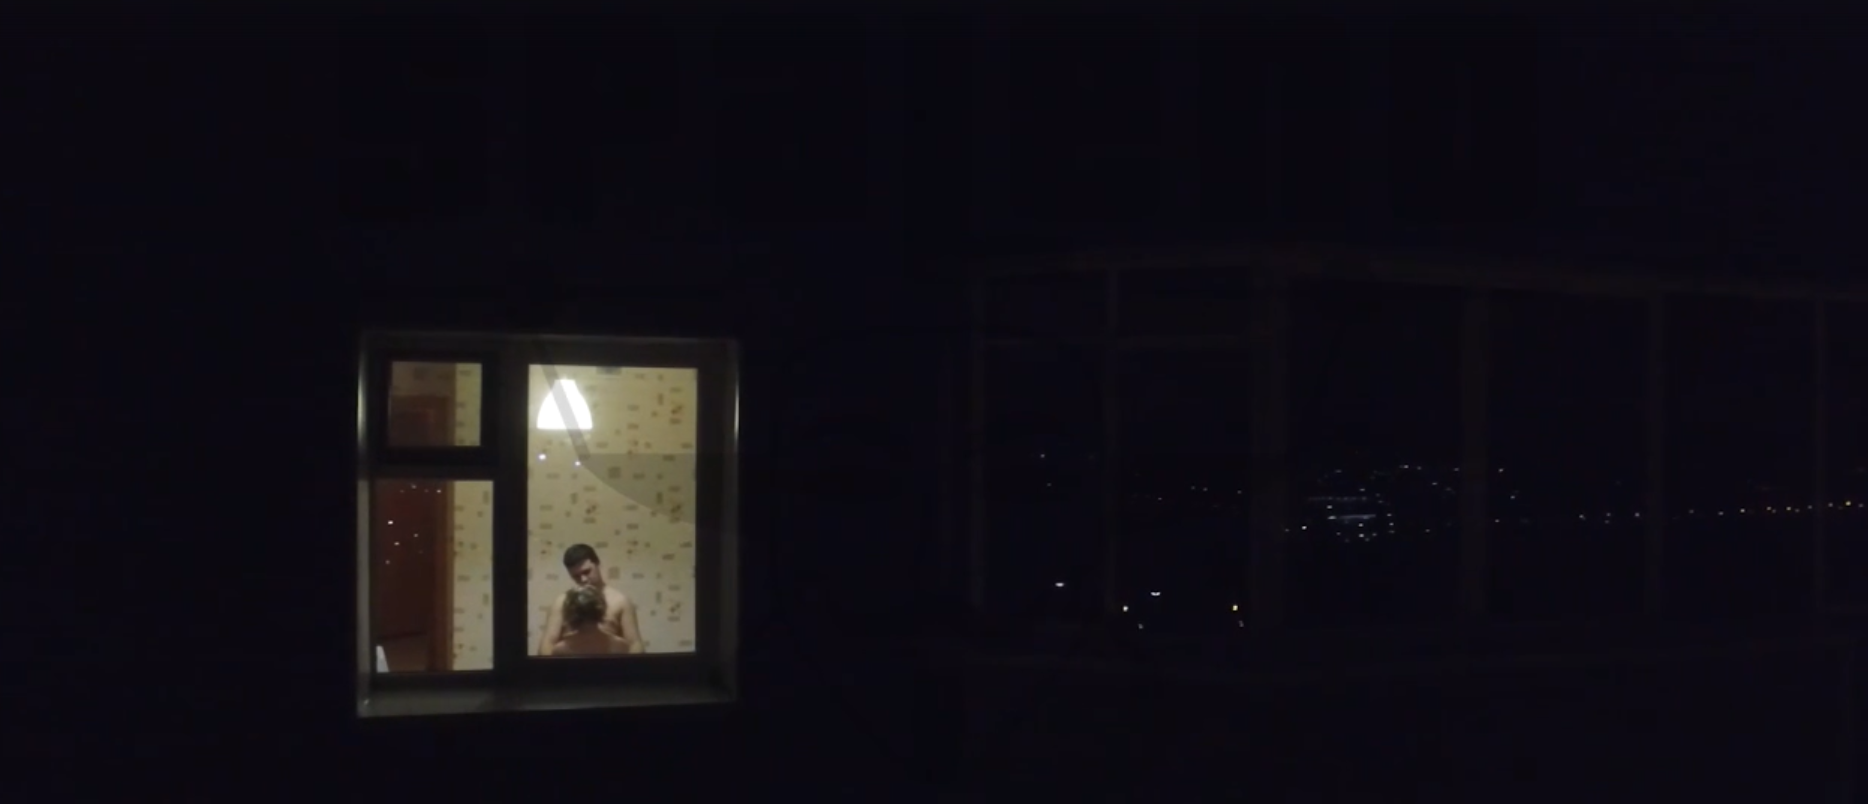 Камера через окно. Заглядывая в окна домов. Подсмотренное в окнах домов. Квадрокоптер у окна. Подглядываем в ночные окна.